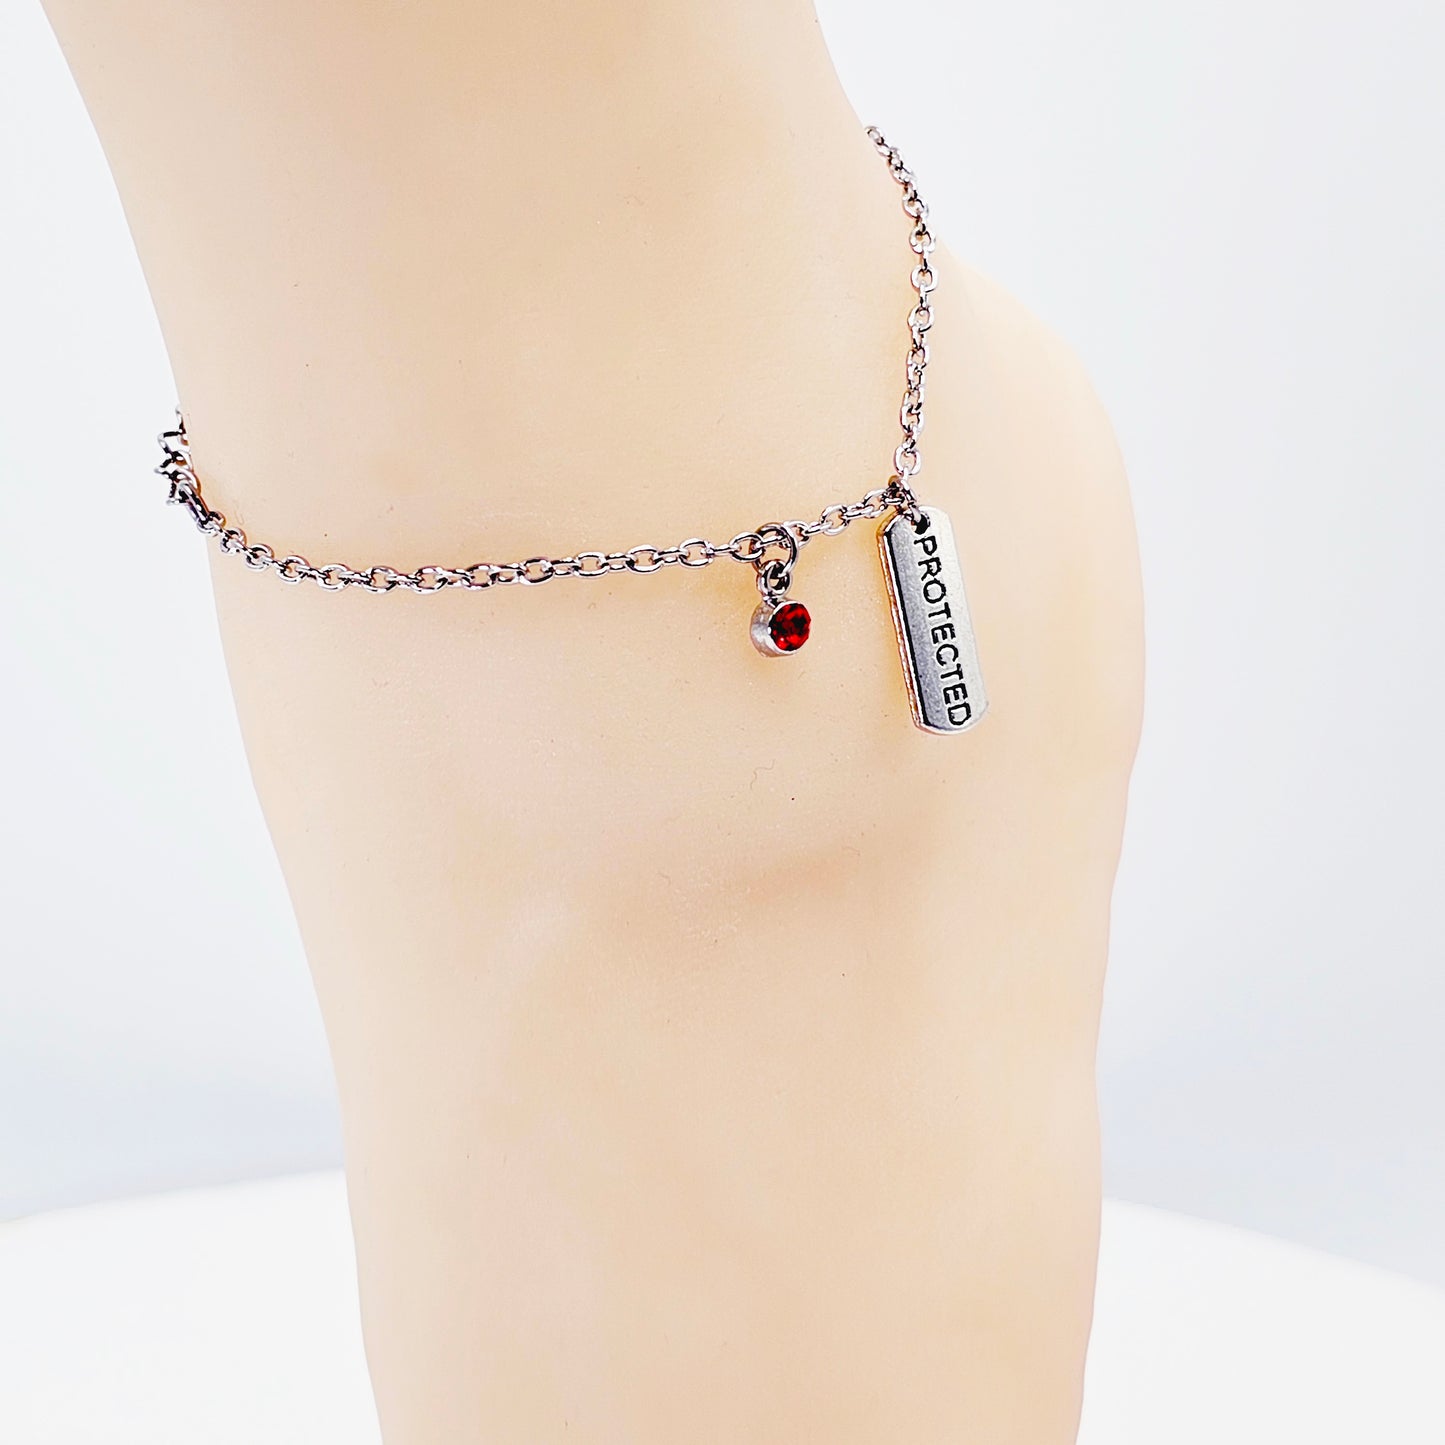 Protected Anklet with Gem. Ankle Bracelet for Women. BDSM